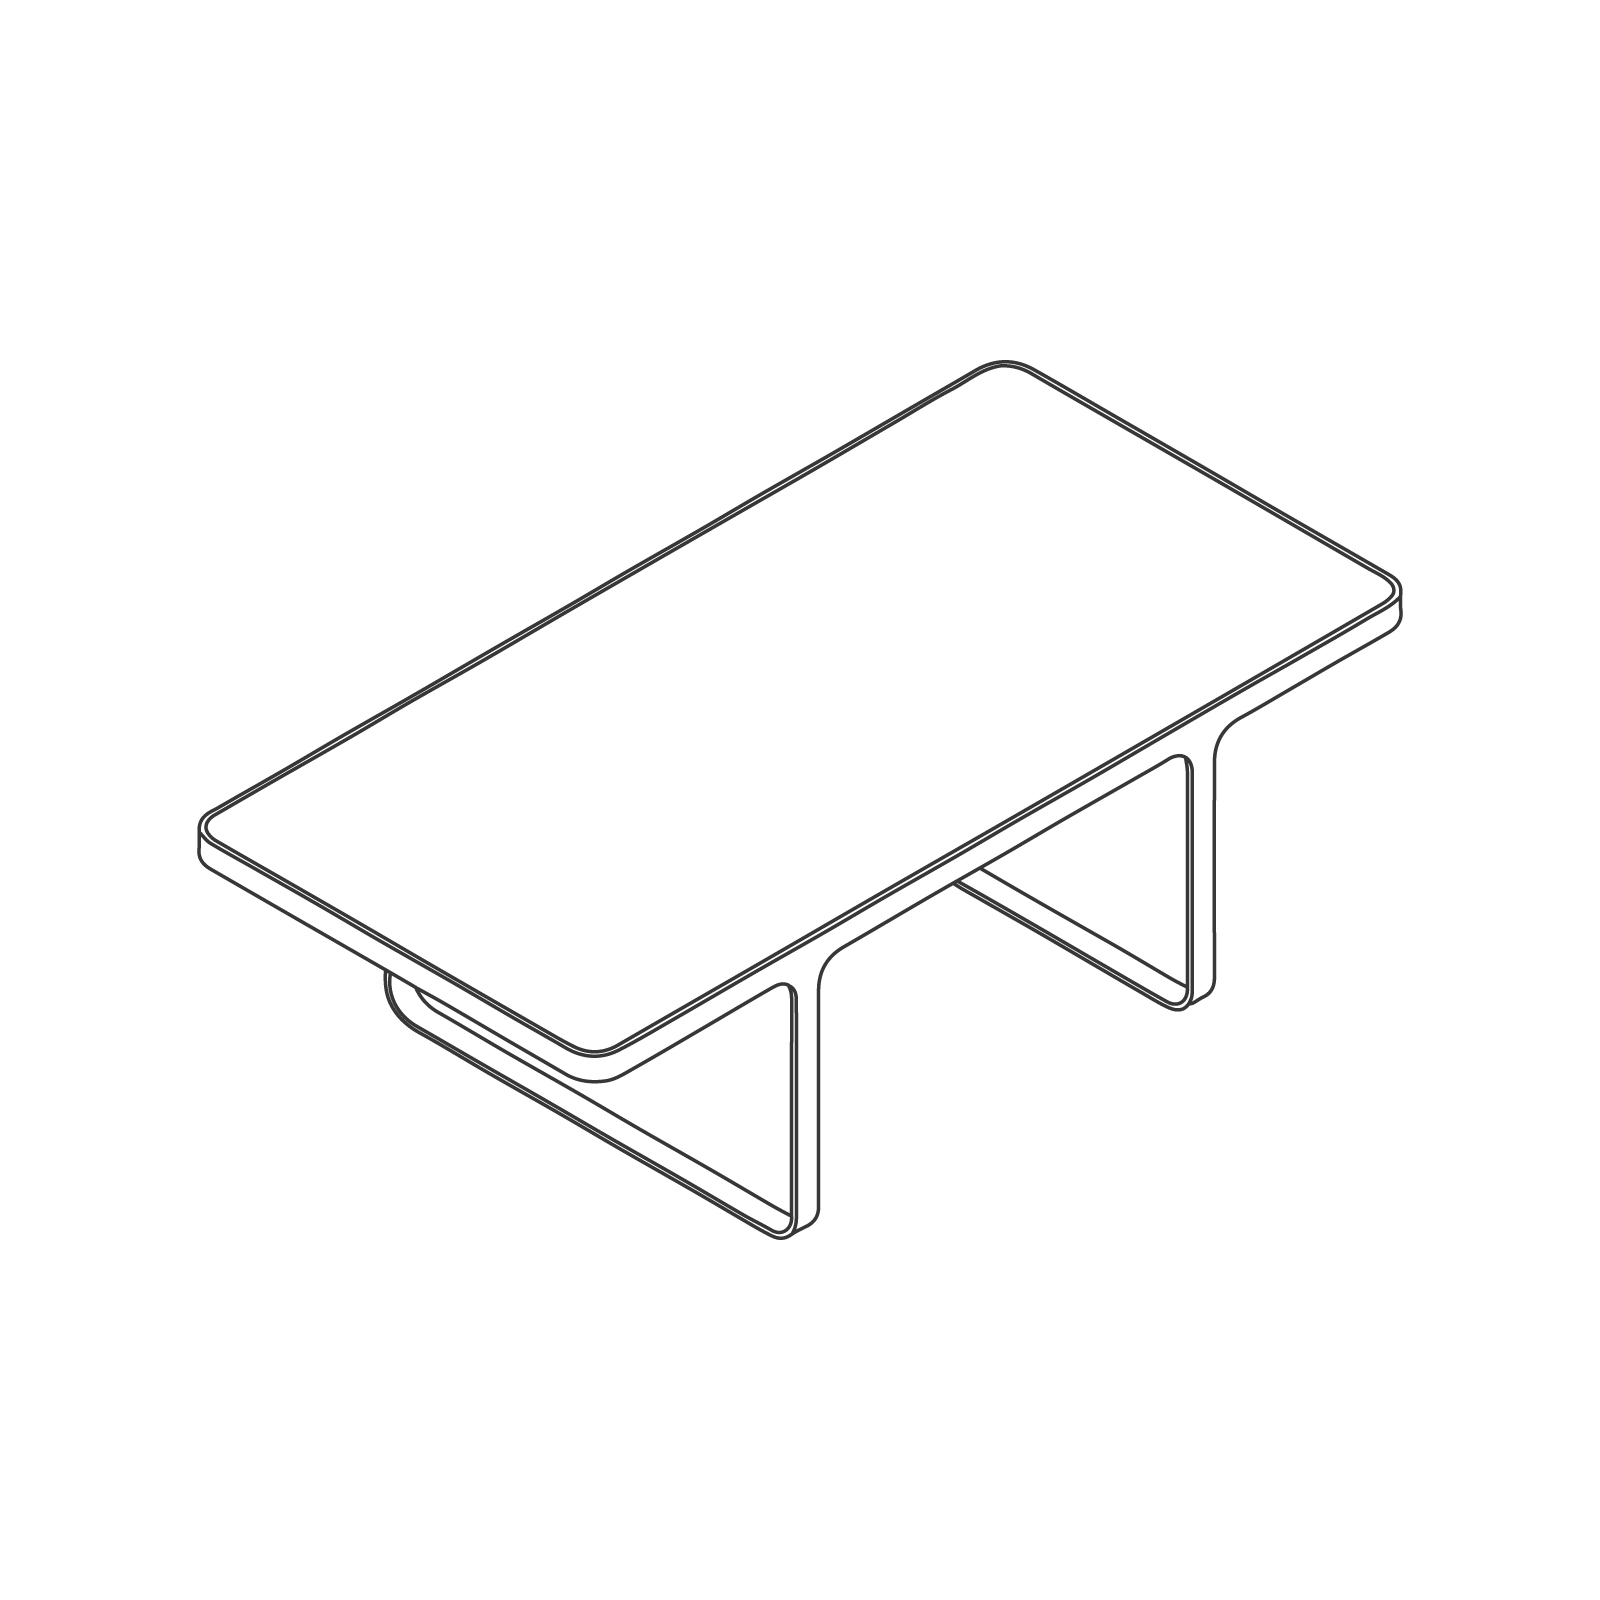 Dibujo en líneas de una mesa de café Trace–rectangular.